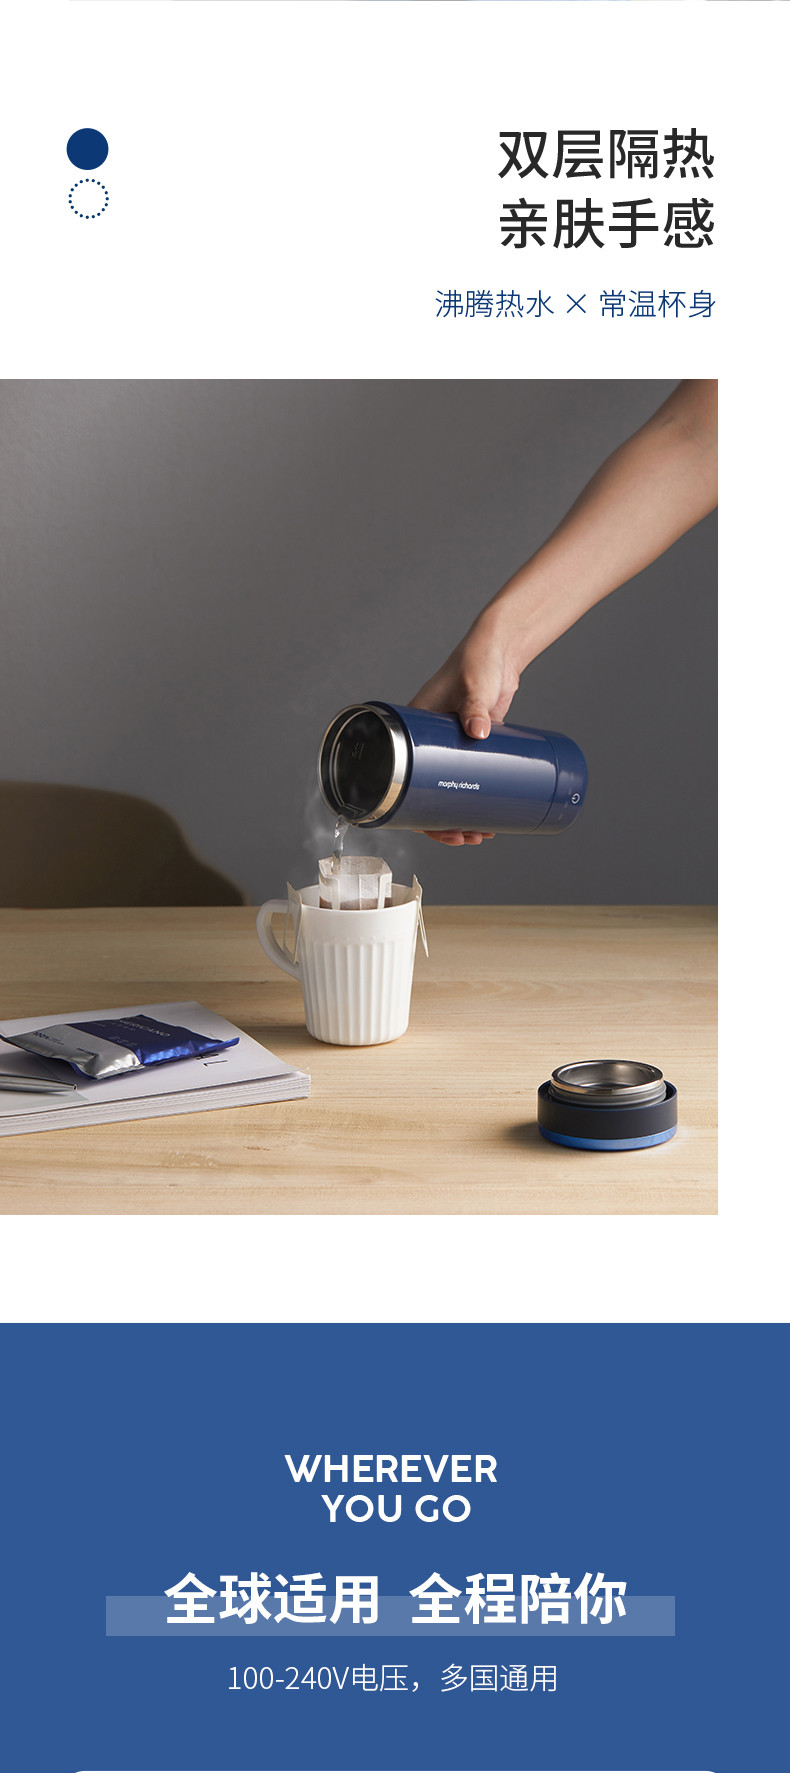 摩飞电器 便携式旅行电热水杯 蓝色 可做电热水壶保温杯